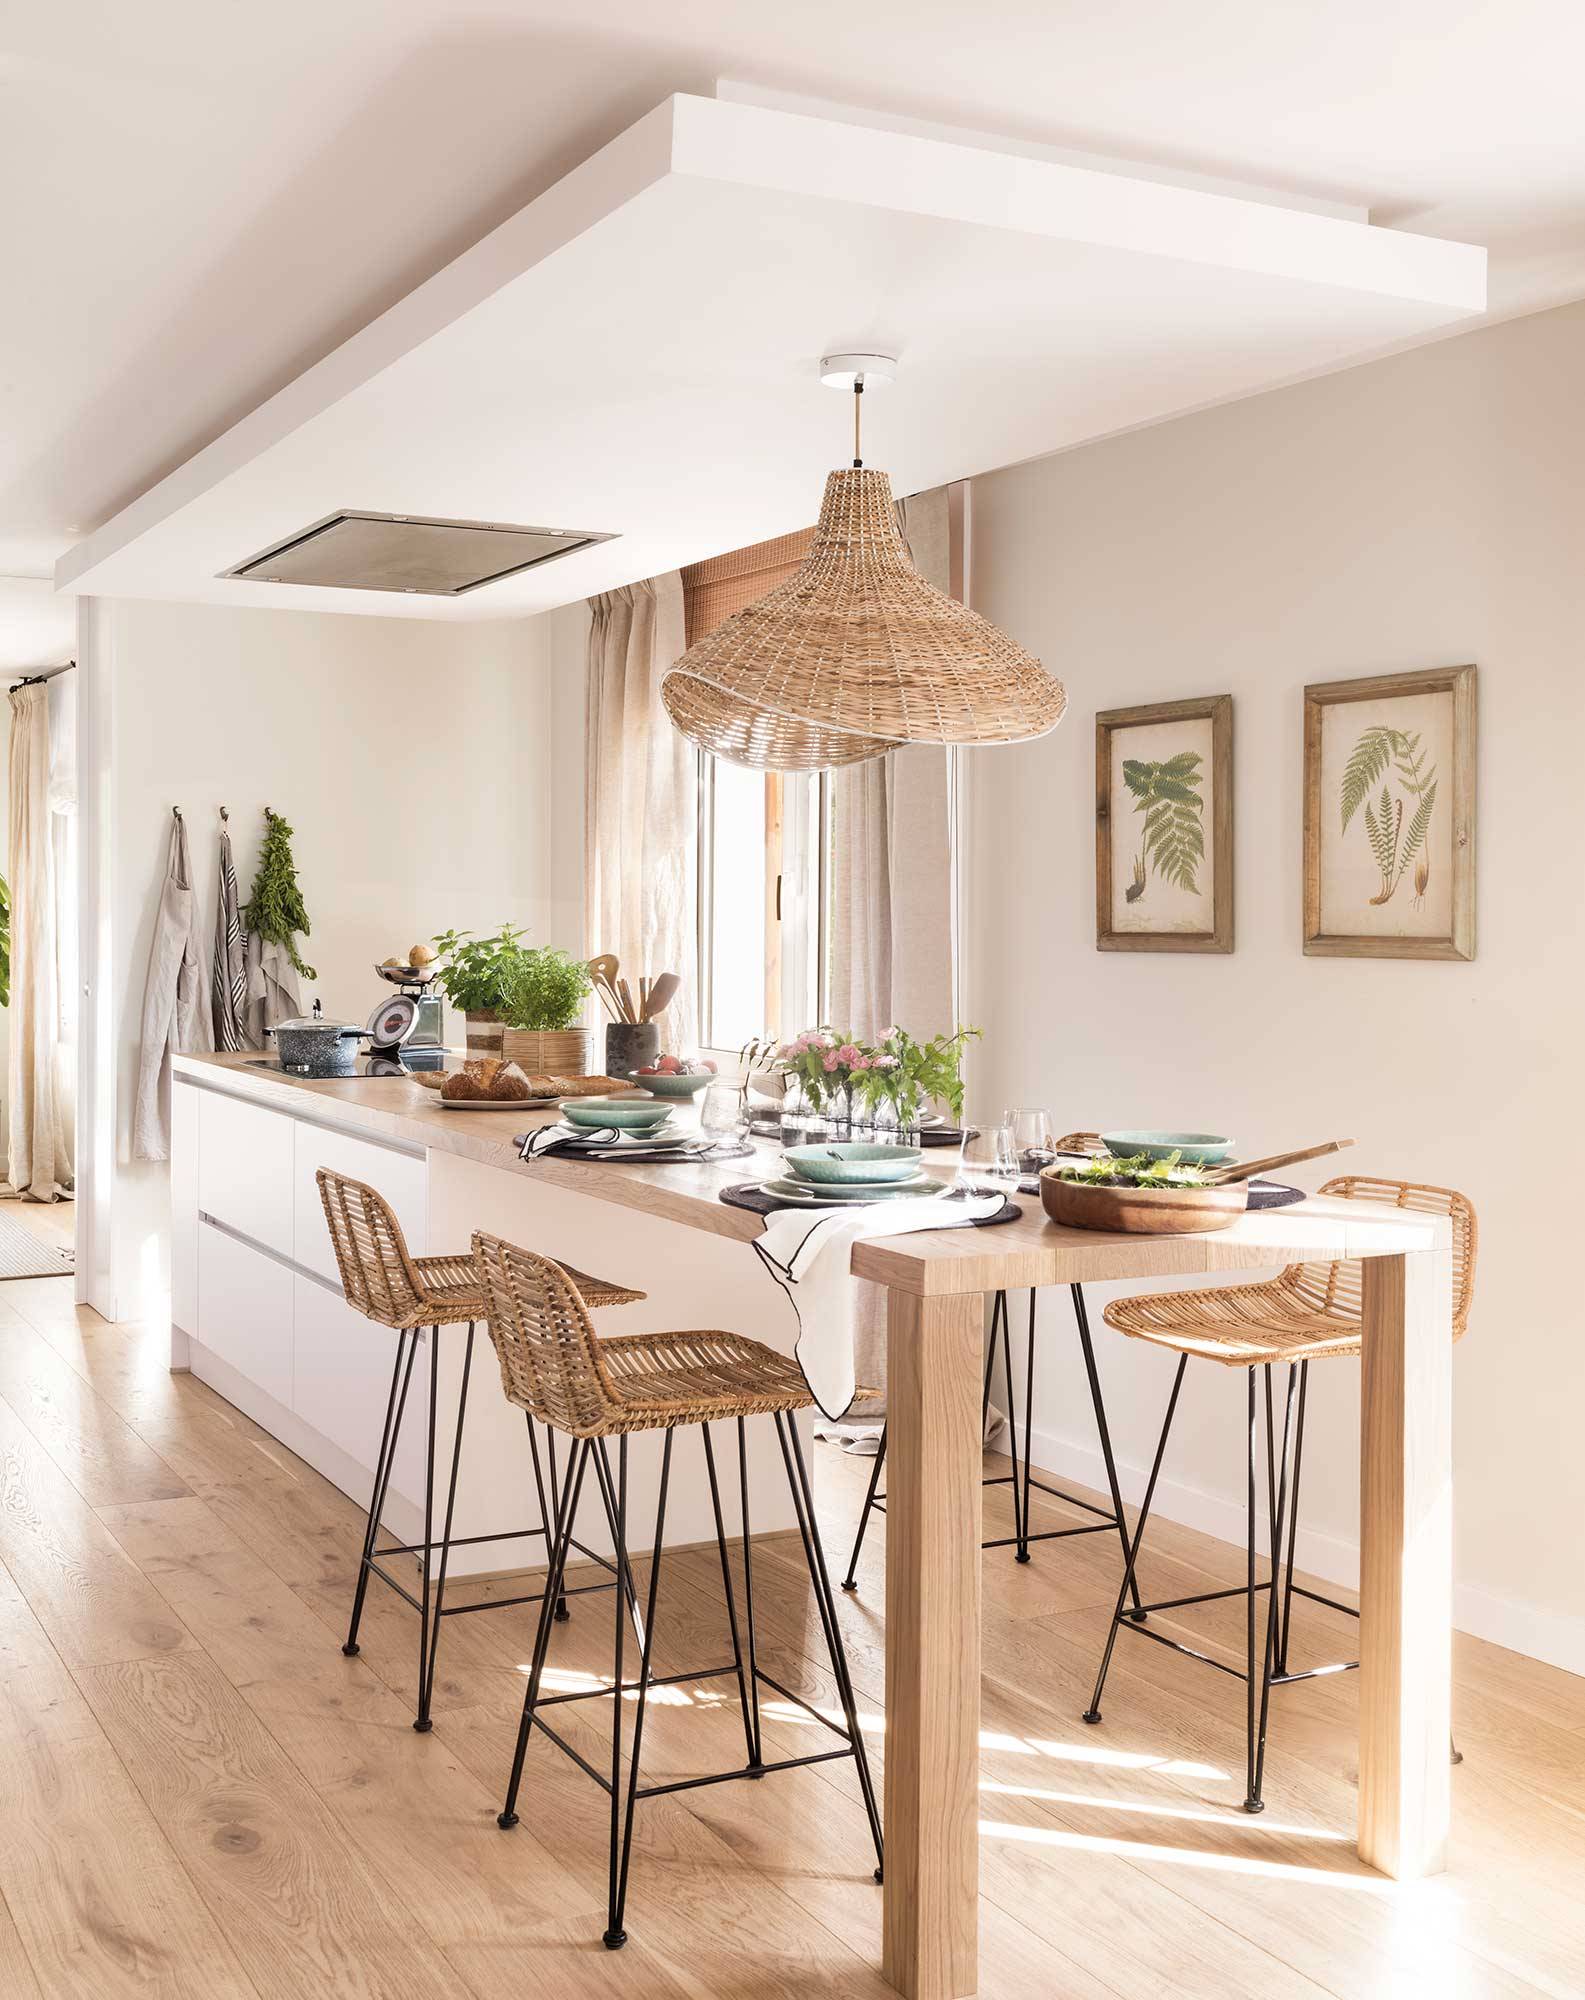 Cocina blanca moderna con isla central, mesa de comedor de madera integrada, taburetes y lámpara de fibras. 